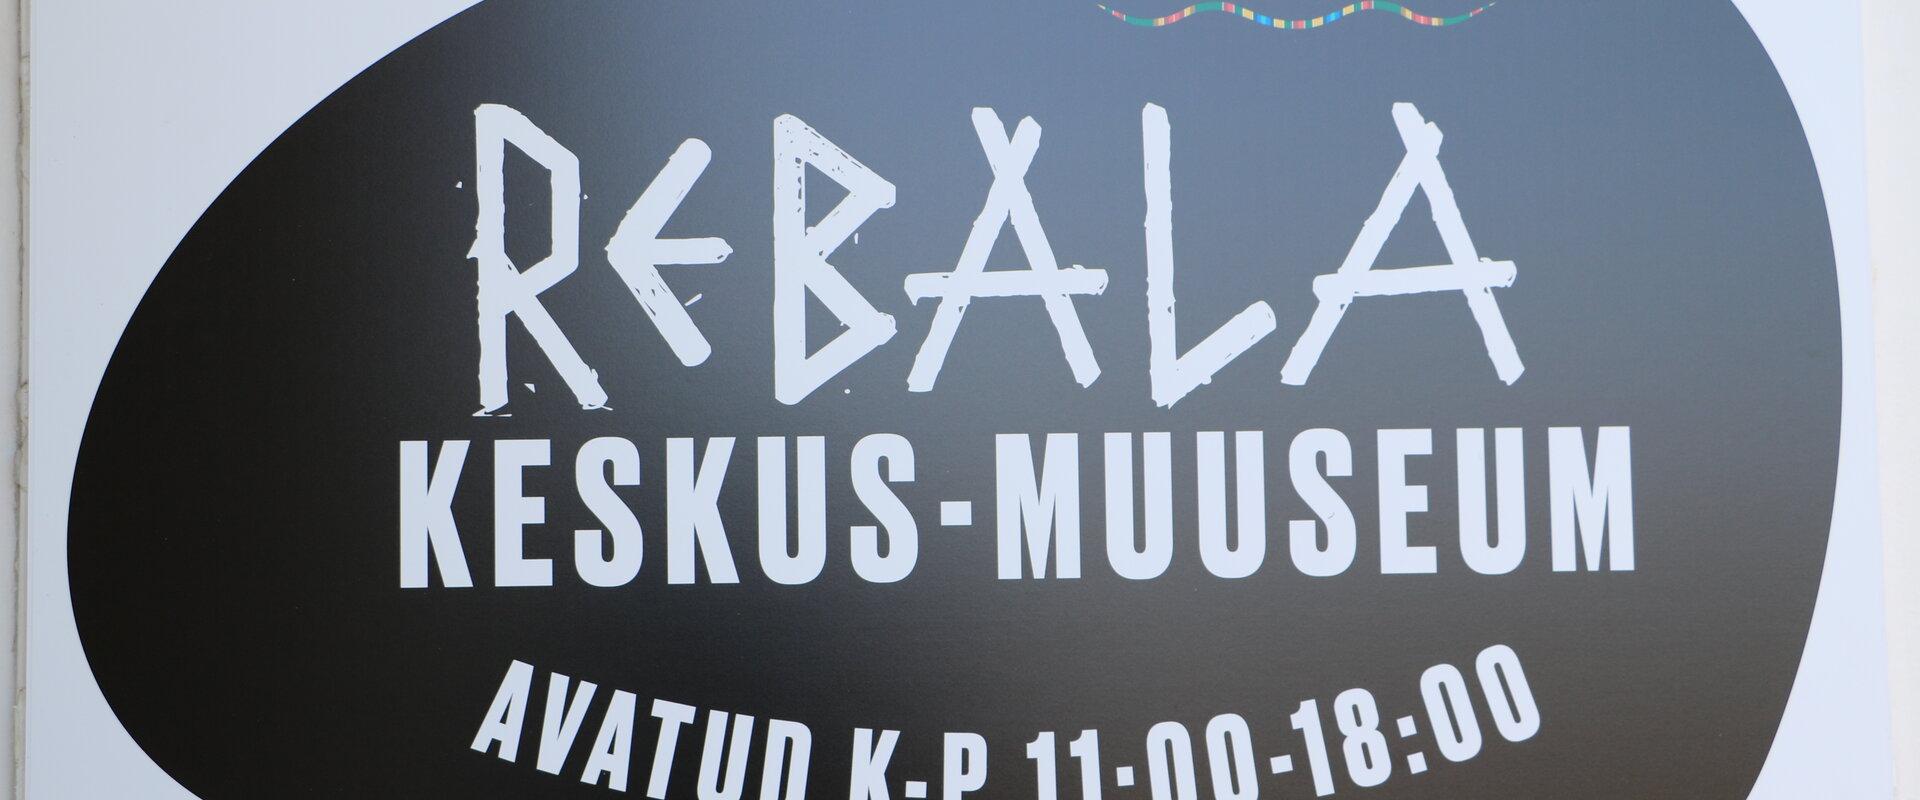 Rebala keskus-muuseum